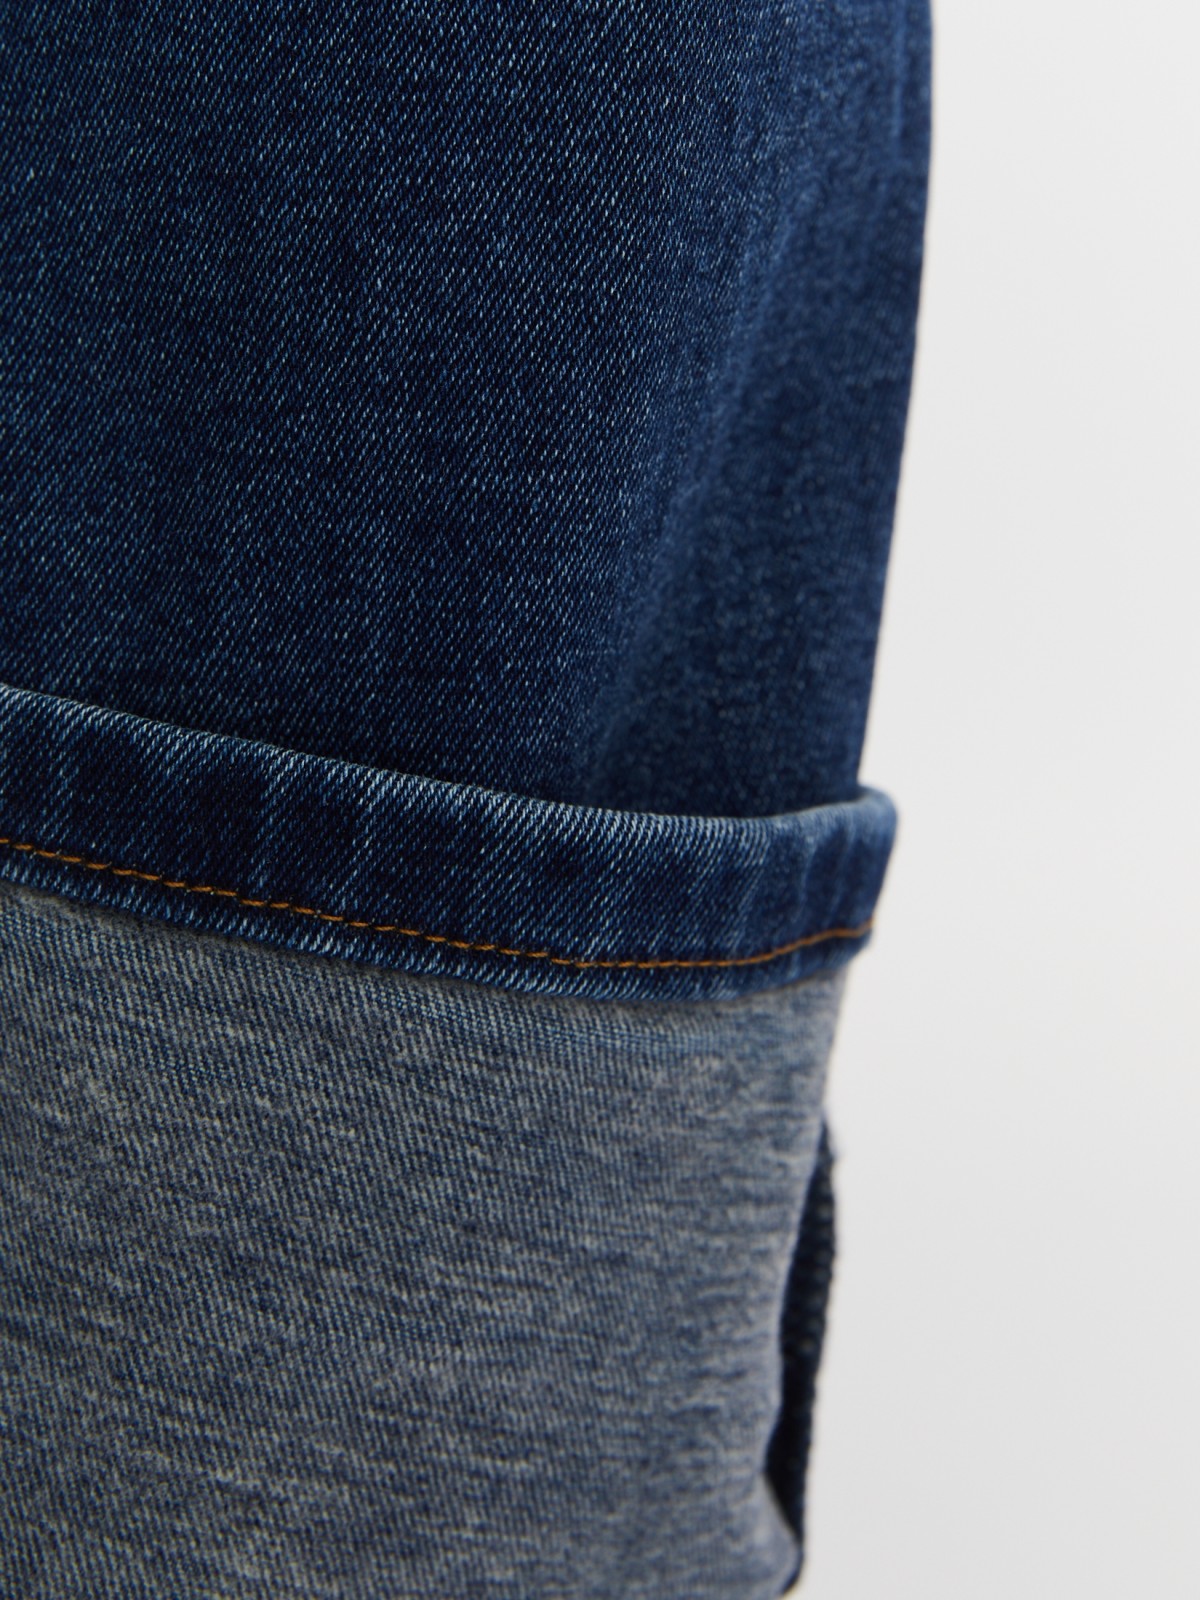 Утеплённые джинсы прямого фасона Regular с начёсом внутри